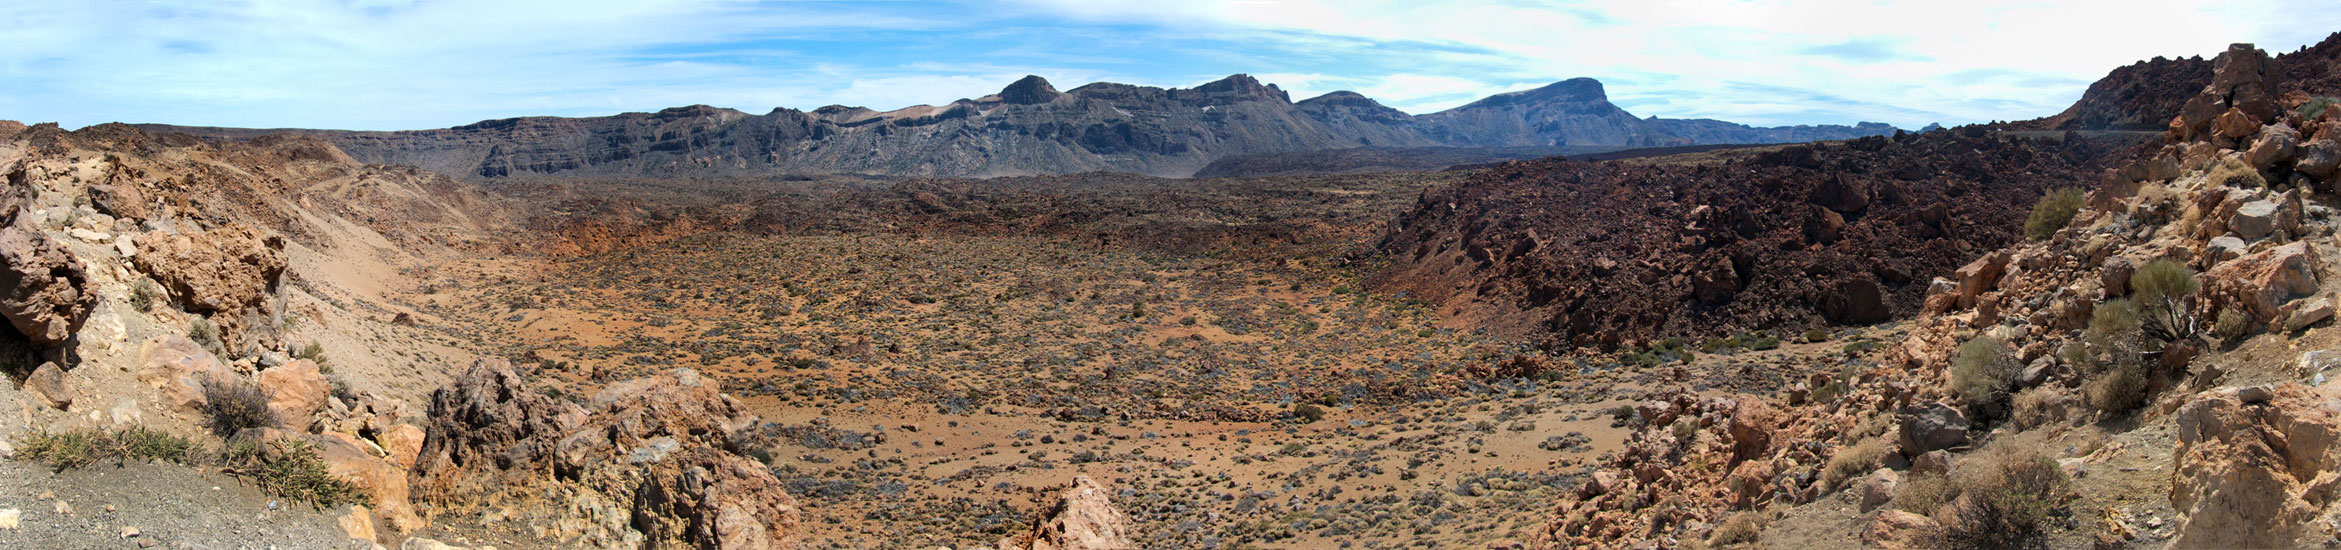 Teide Desert 2